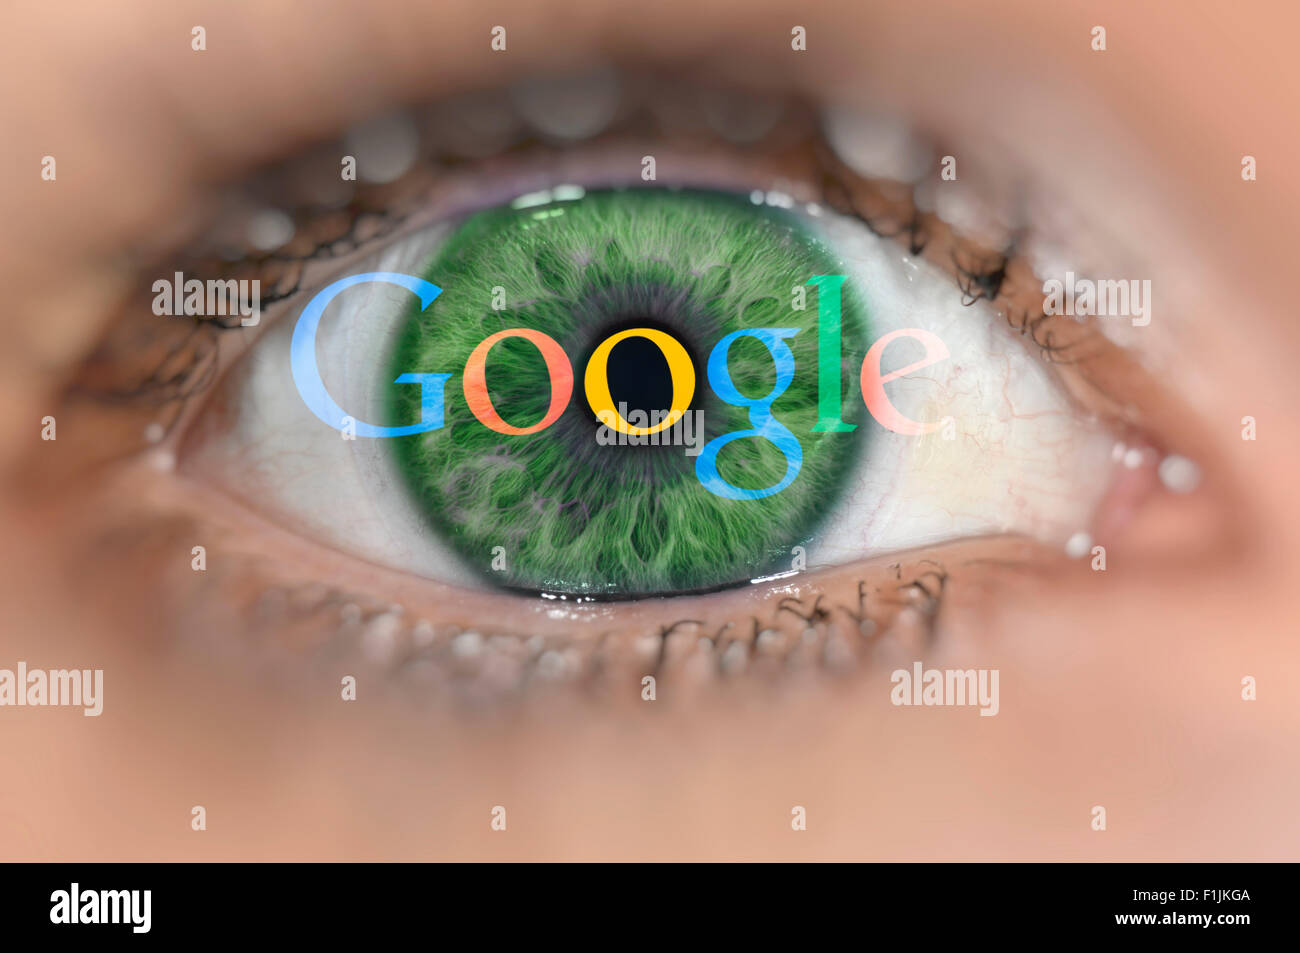 Oeil vert avec le logo Google sur iris, image symbolique, la sécurité des données Banque D'Images